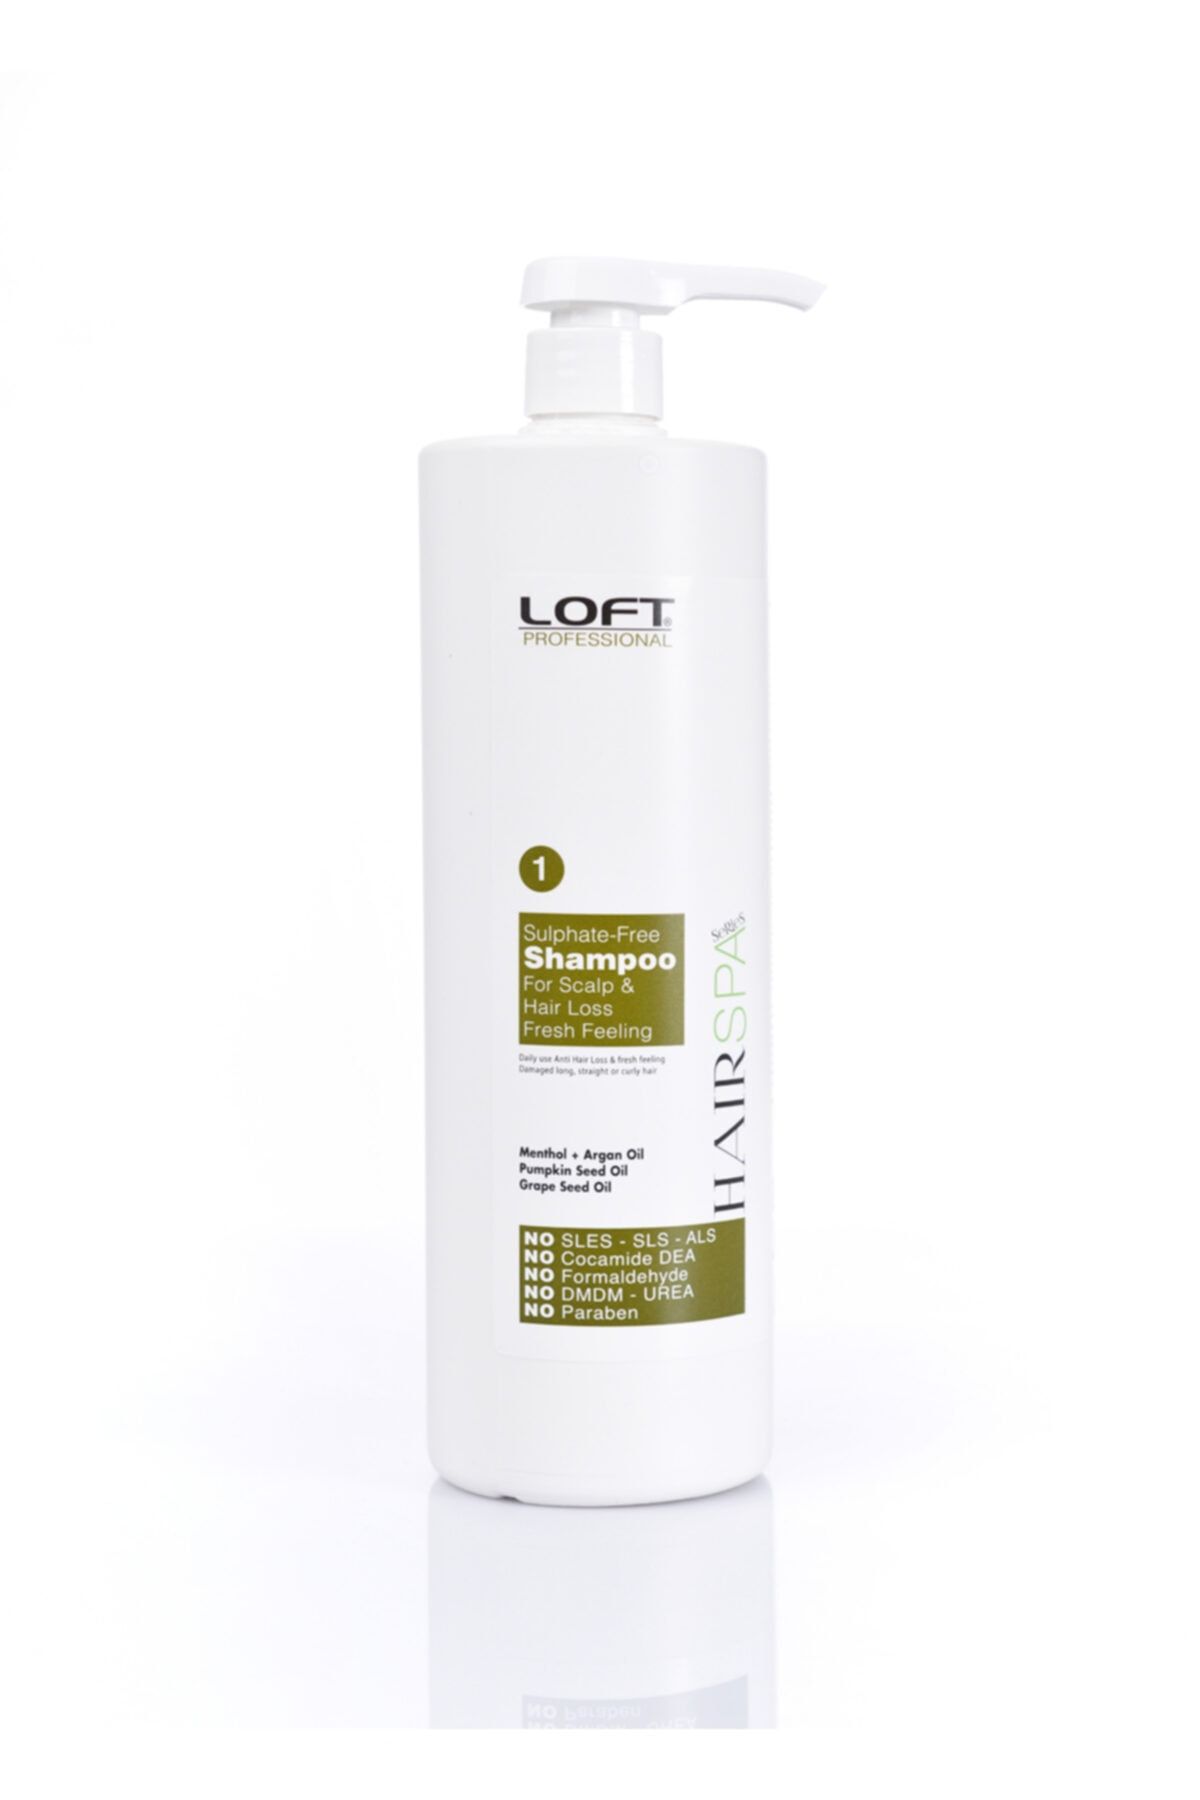 Loft Sülfatsız Dökülme Karşıtı + Tonik Etkili Şampuan 1000ml.